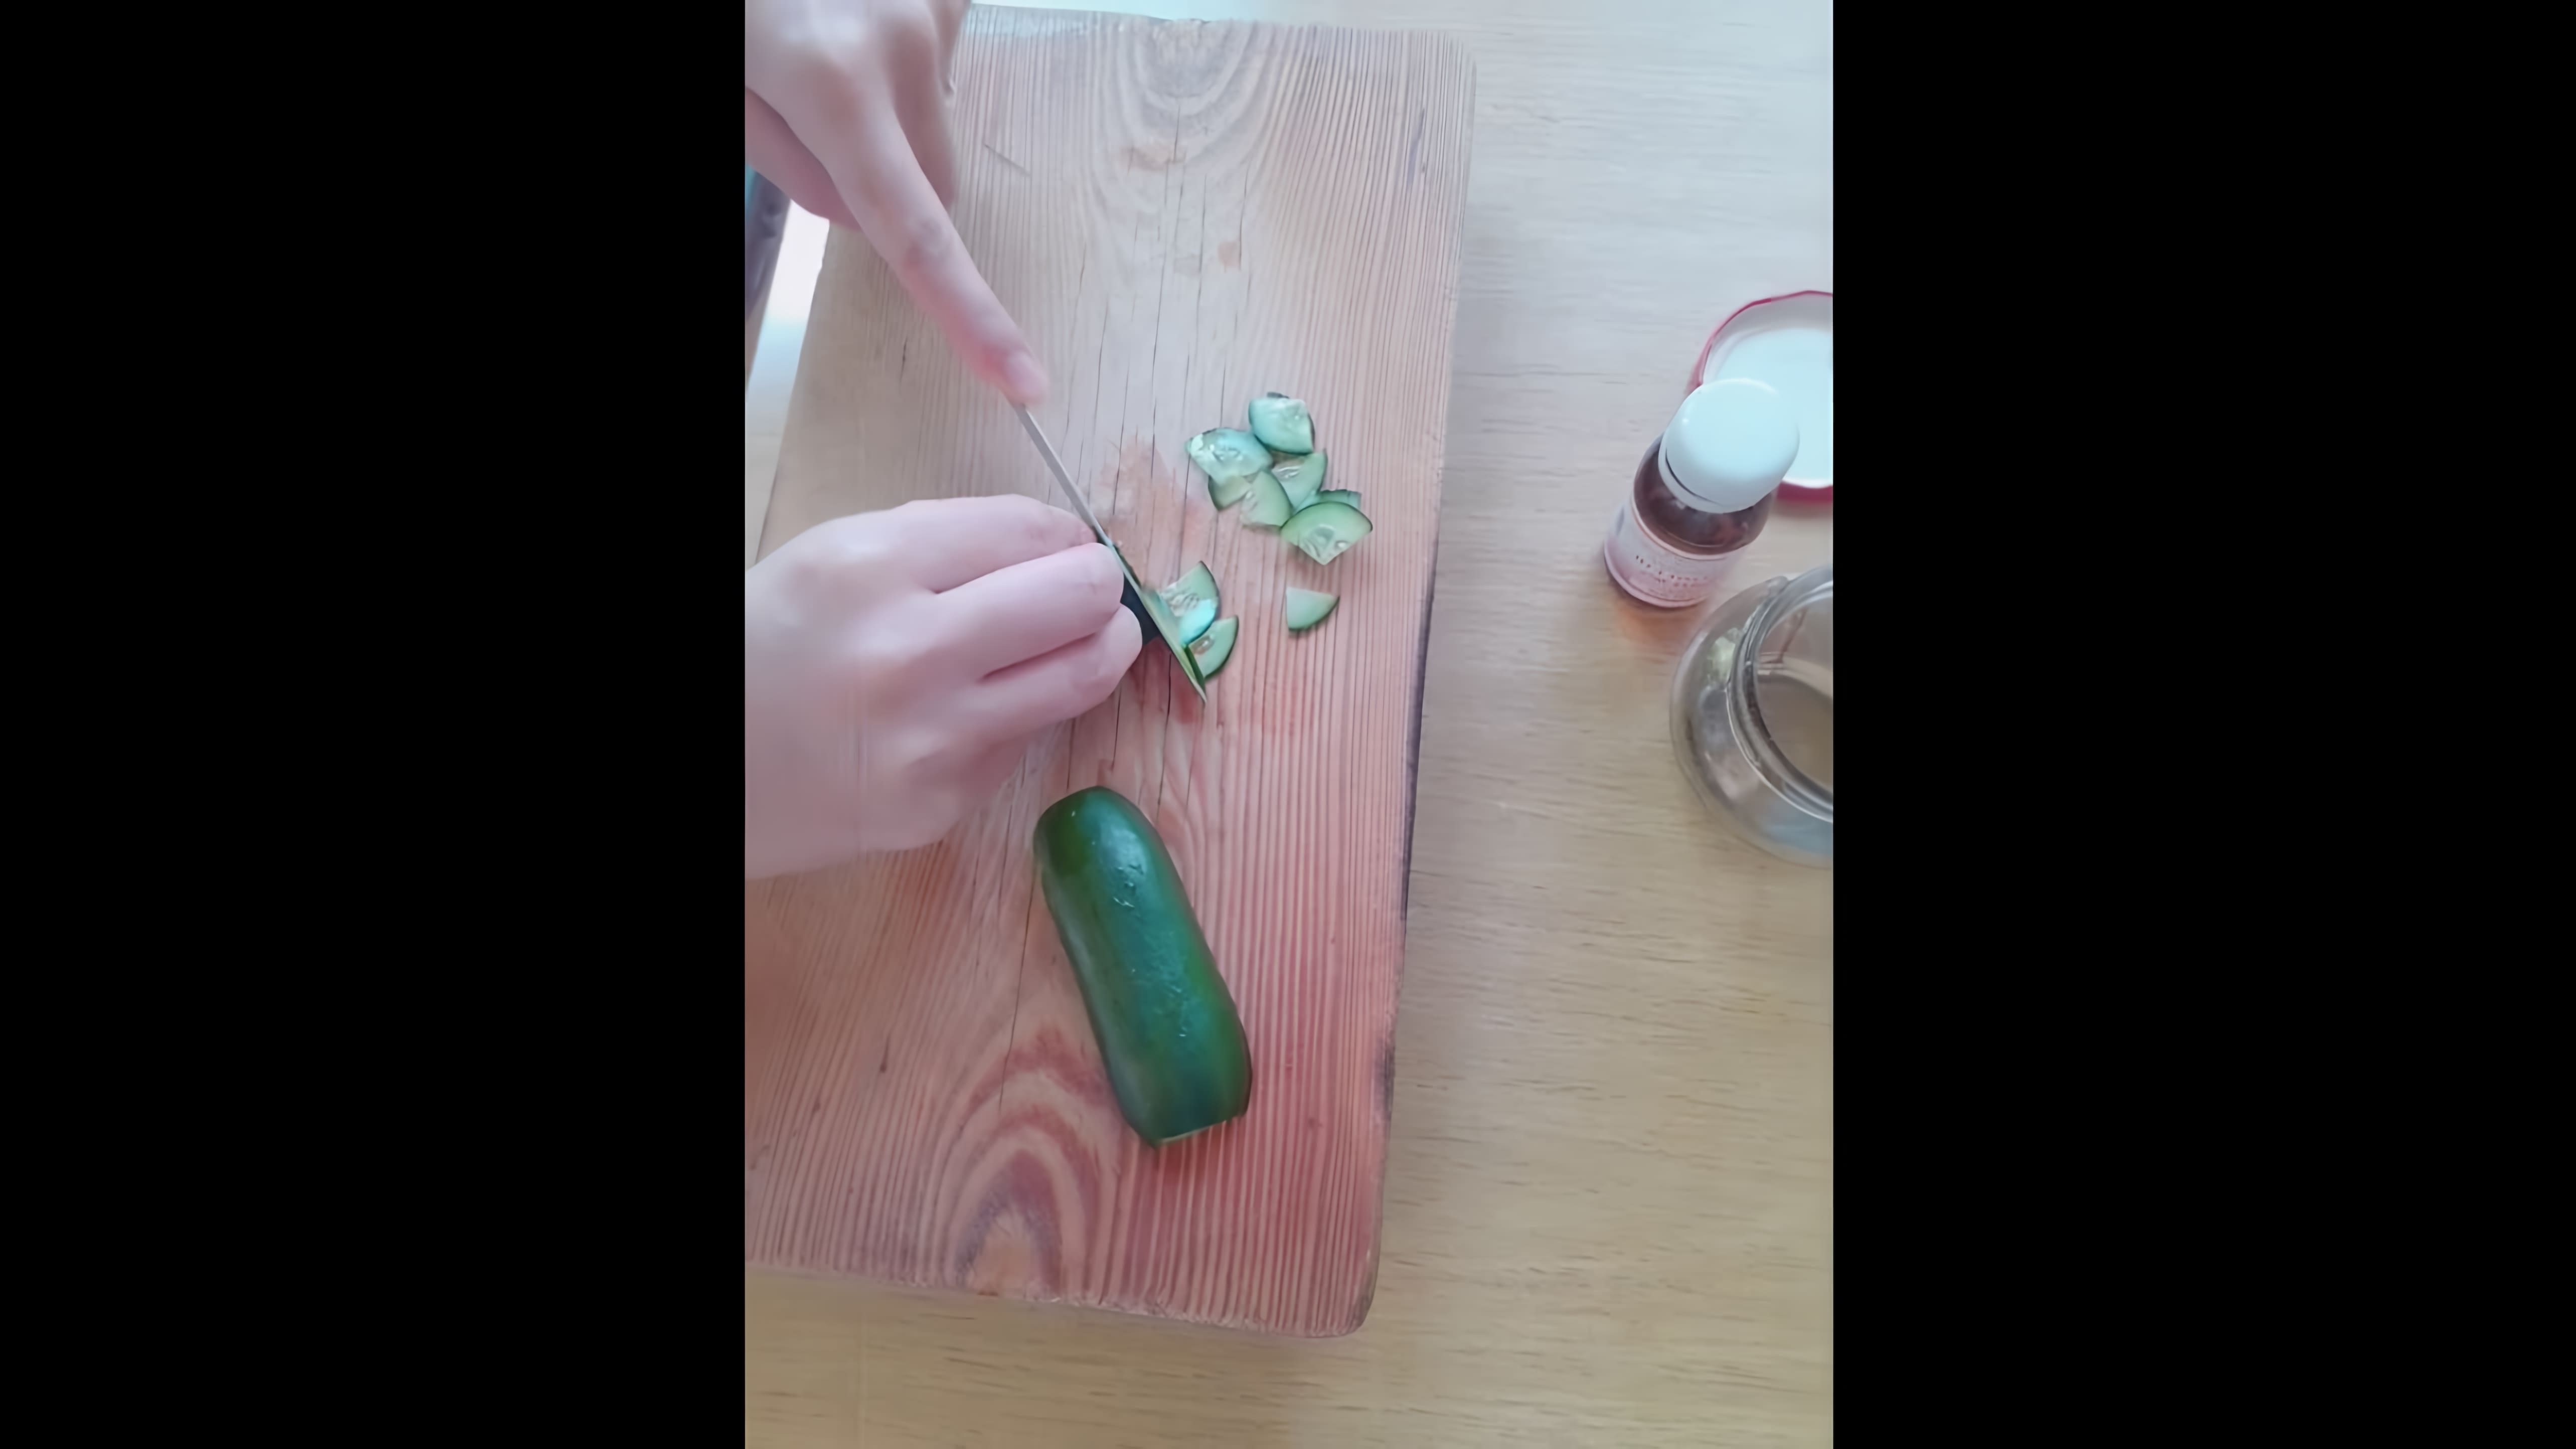 В данном видео демонстрируется процесс приготовления лосьона из огурцов в домашних условиях